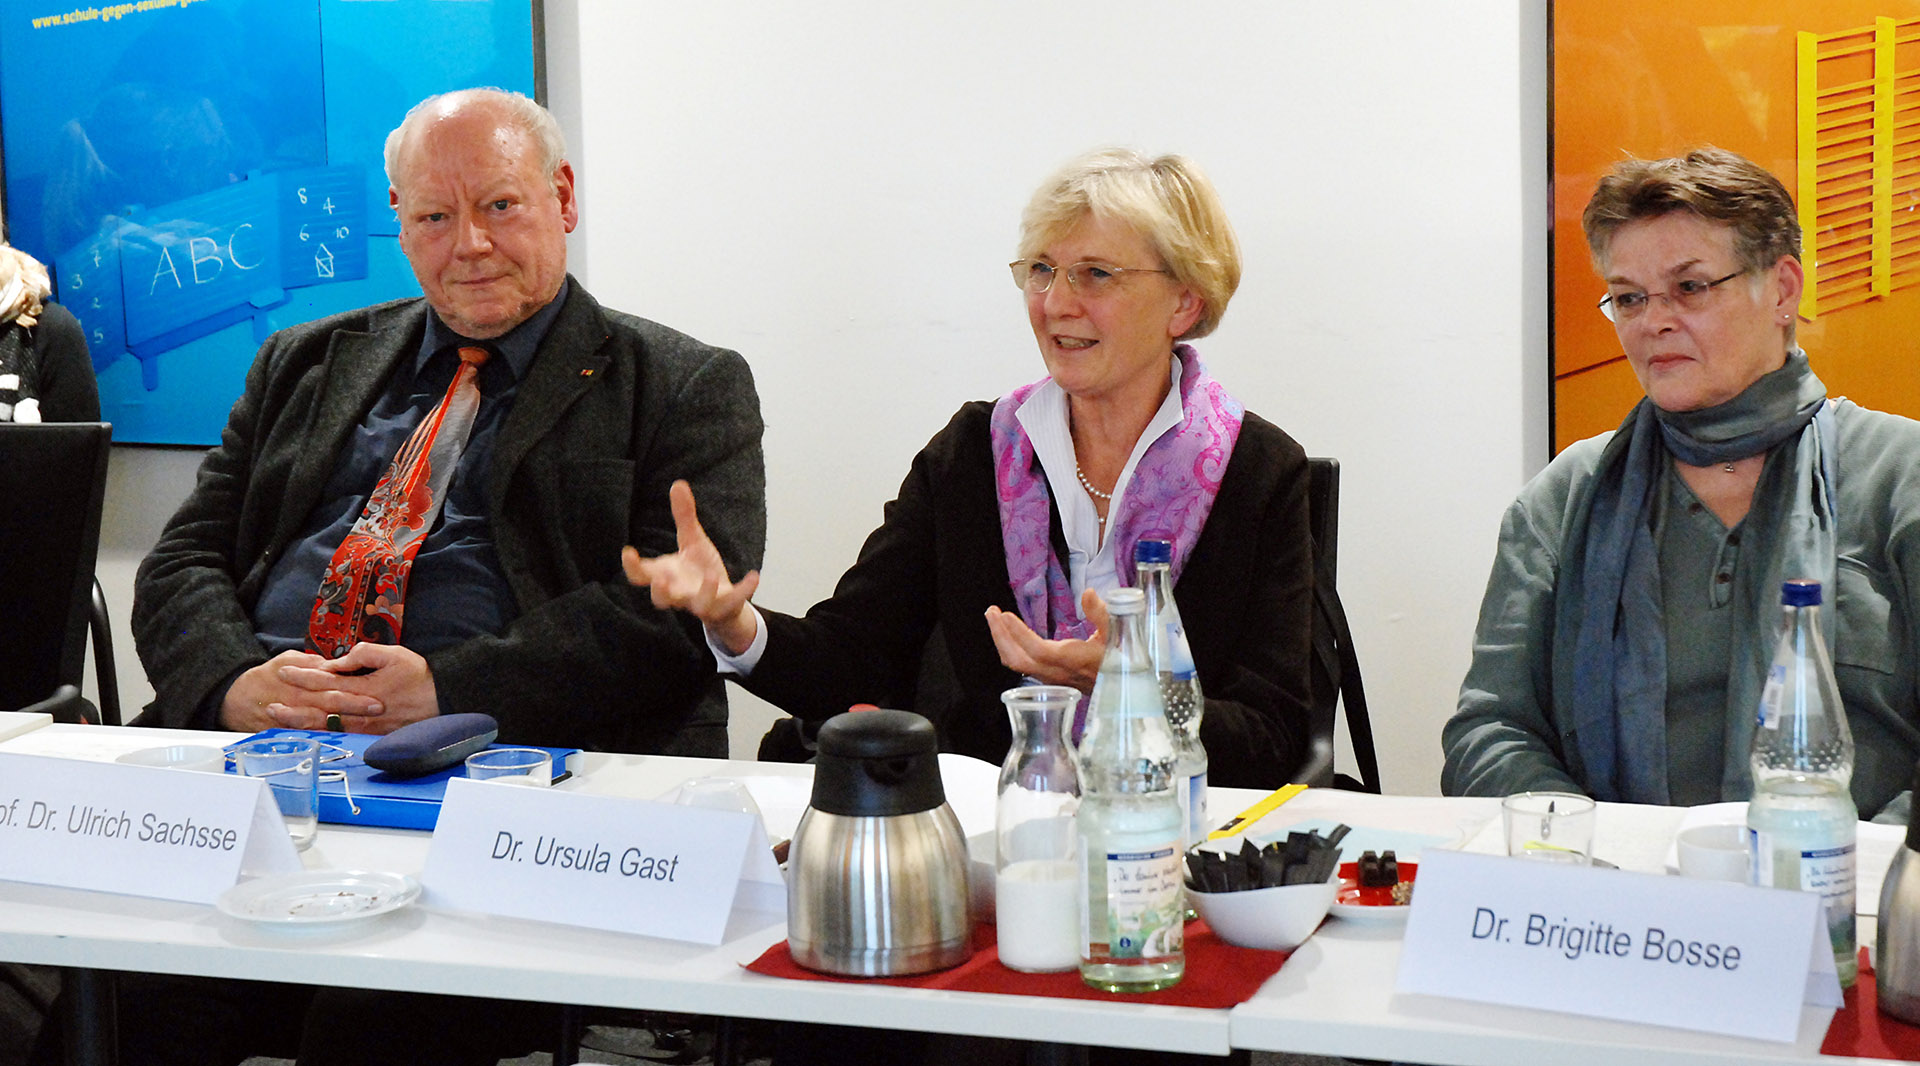 von links nach rechts im Bild: Prof. Dr. Ulrich Sachsse, Dr. Ursula Gast, Dr. Brigitte Bosse